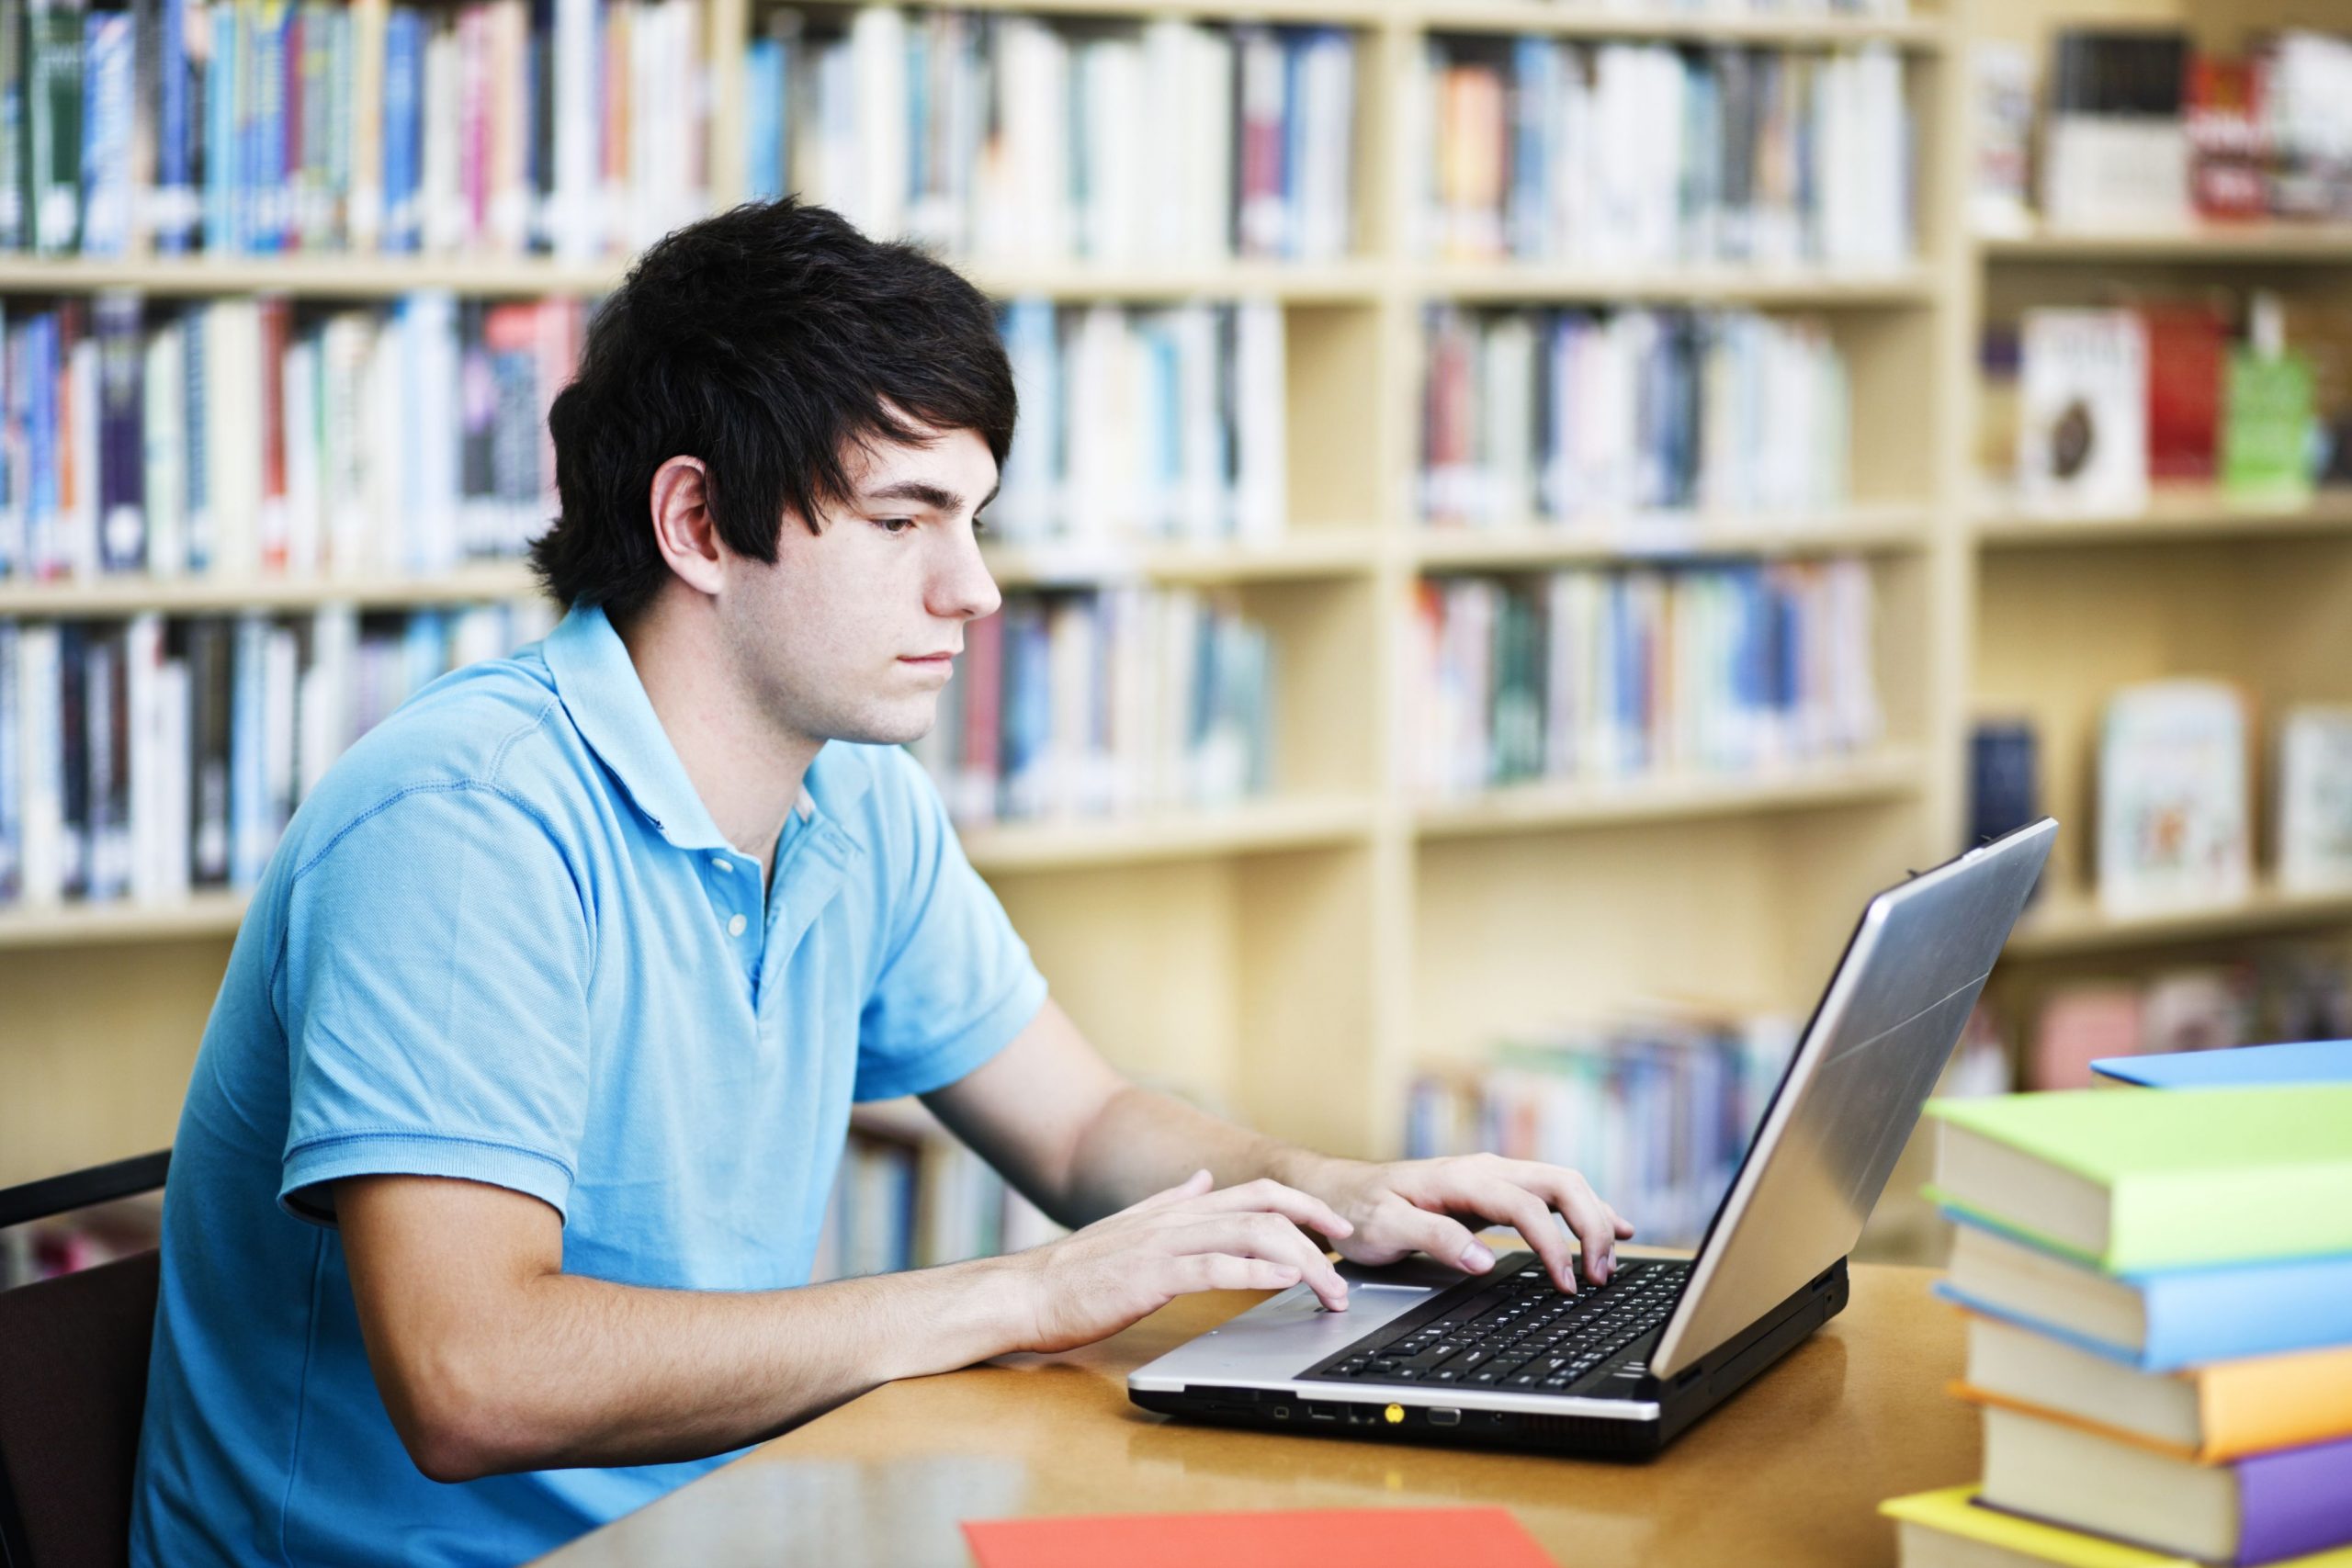 University dissertations. Человек обучается за компьютером. Студент за учебой. Студент с компьютером. Подросток за компьютером.